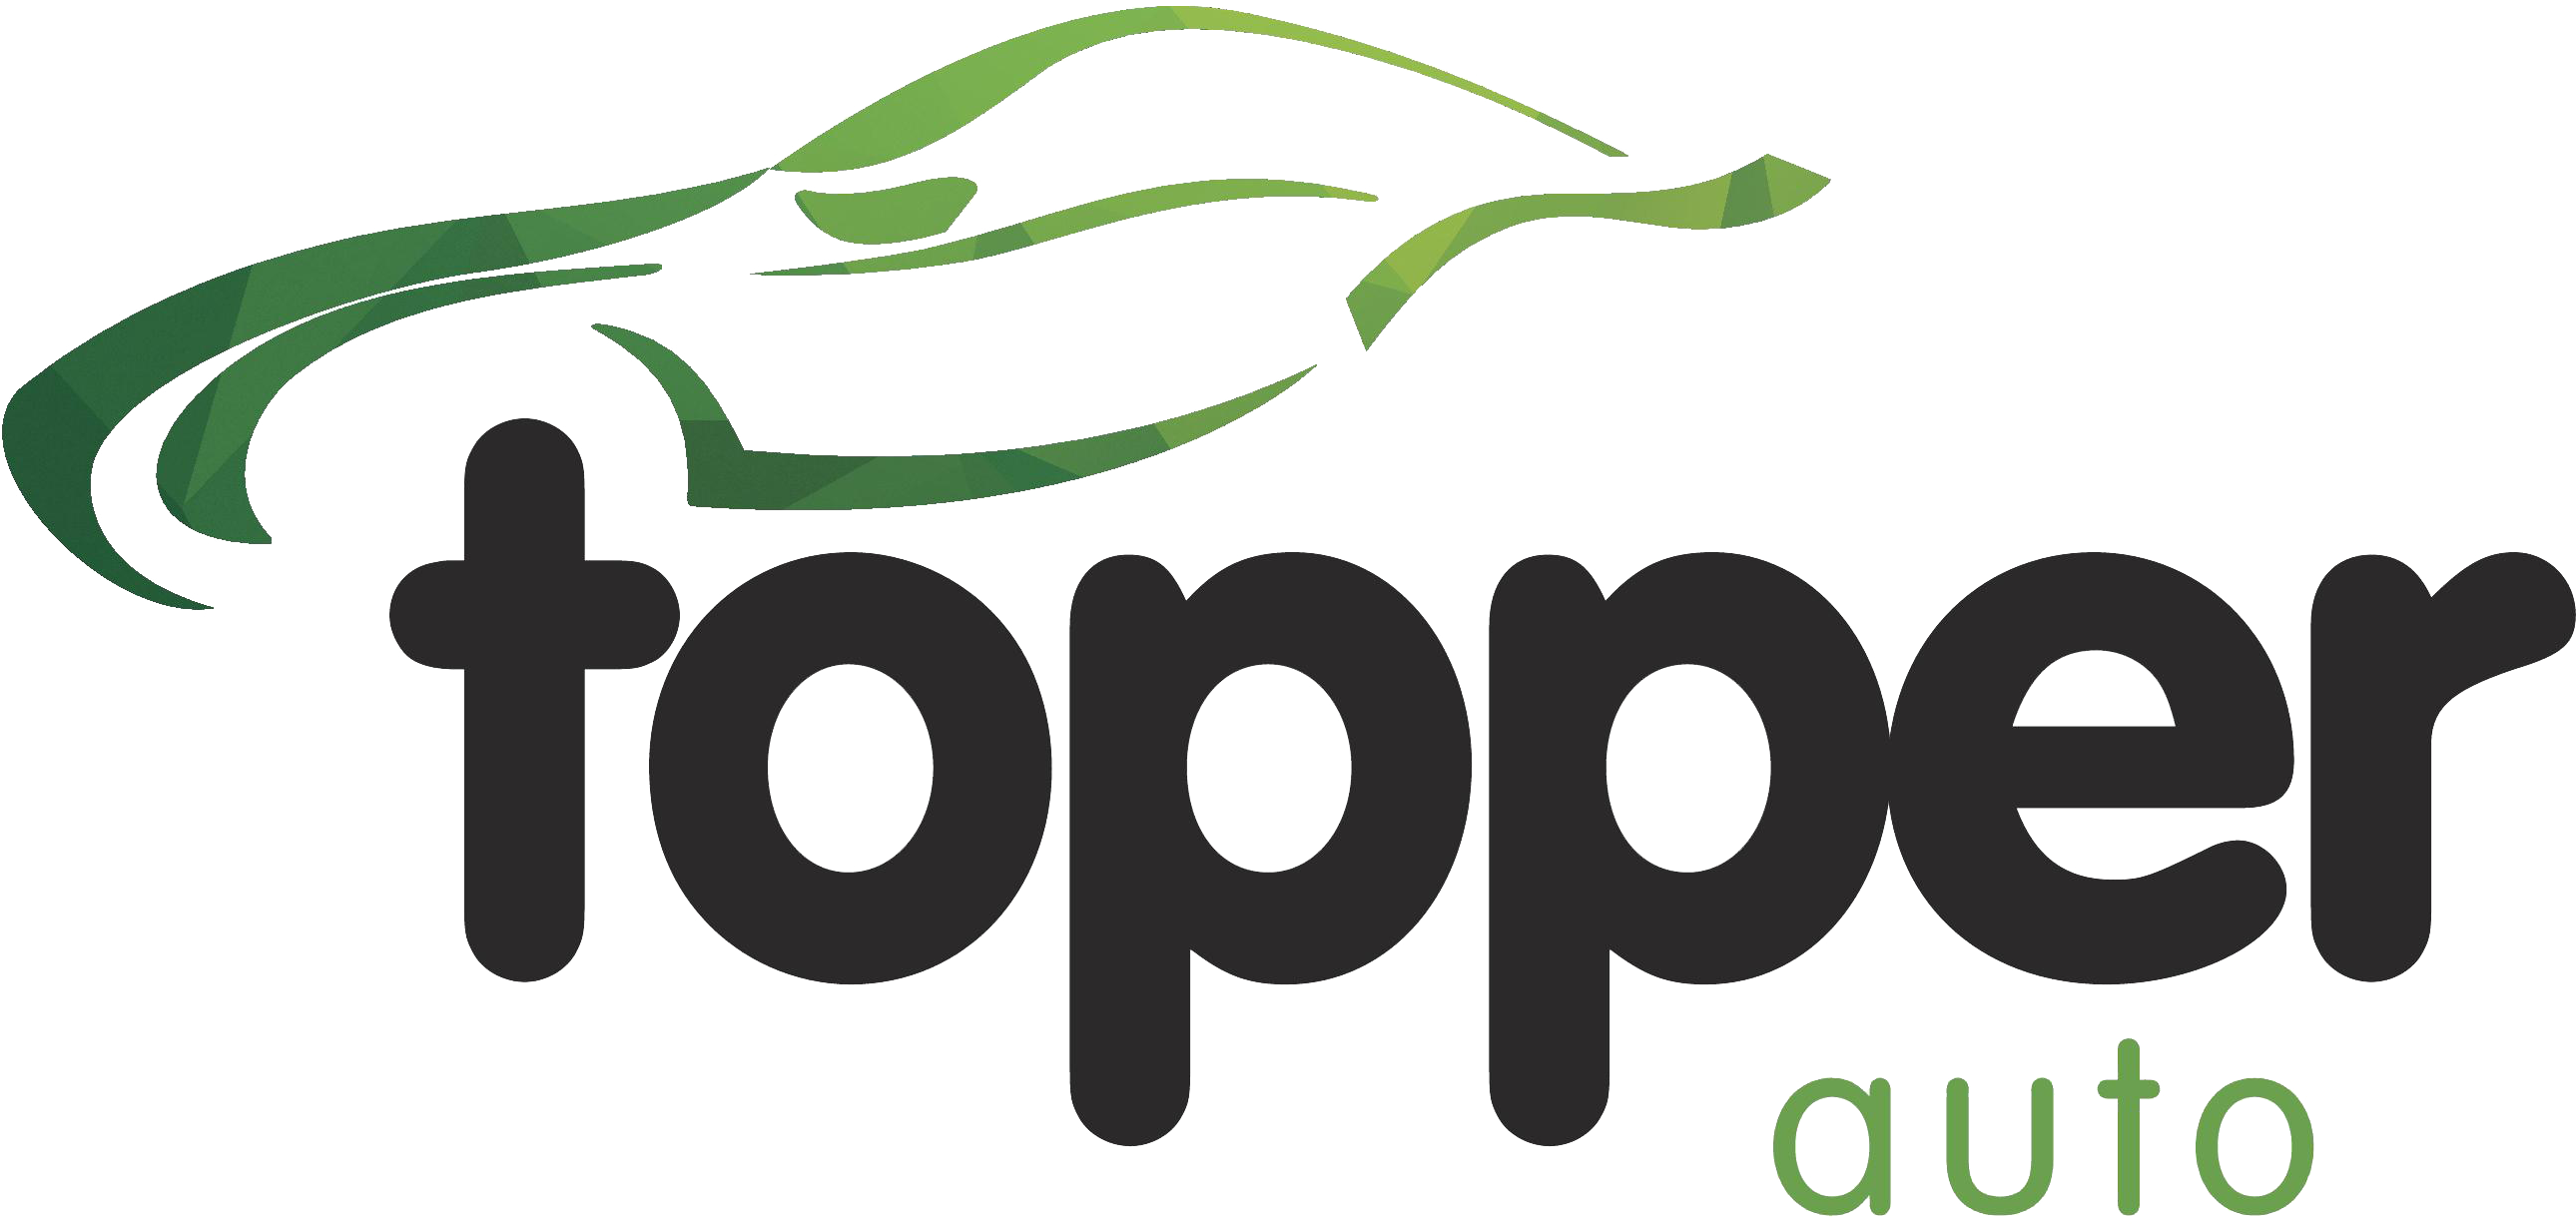 Topper Auto logo